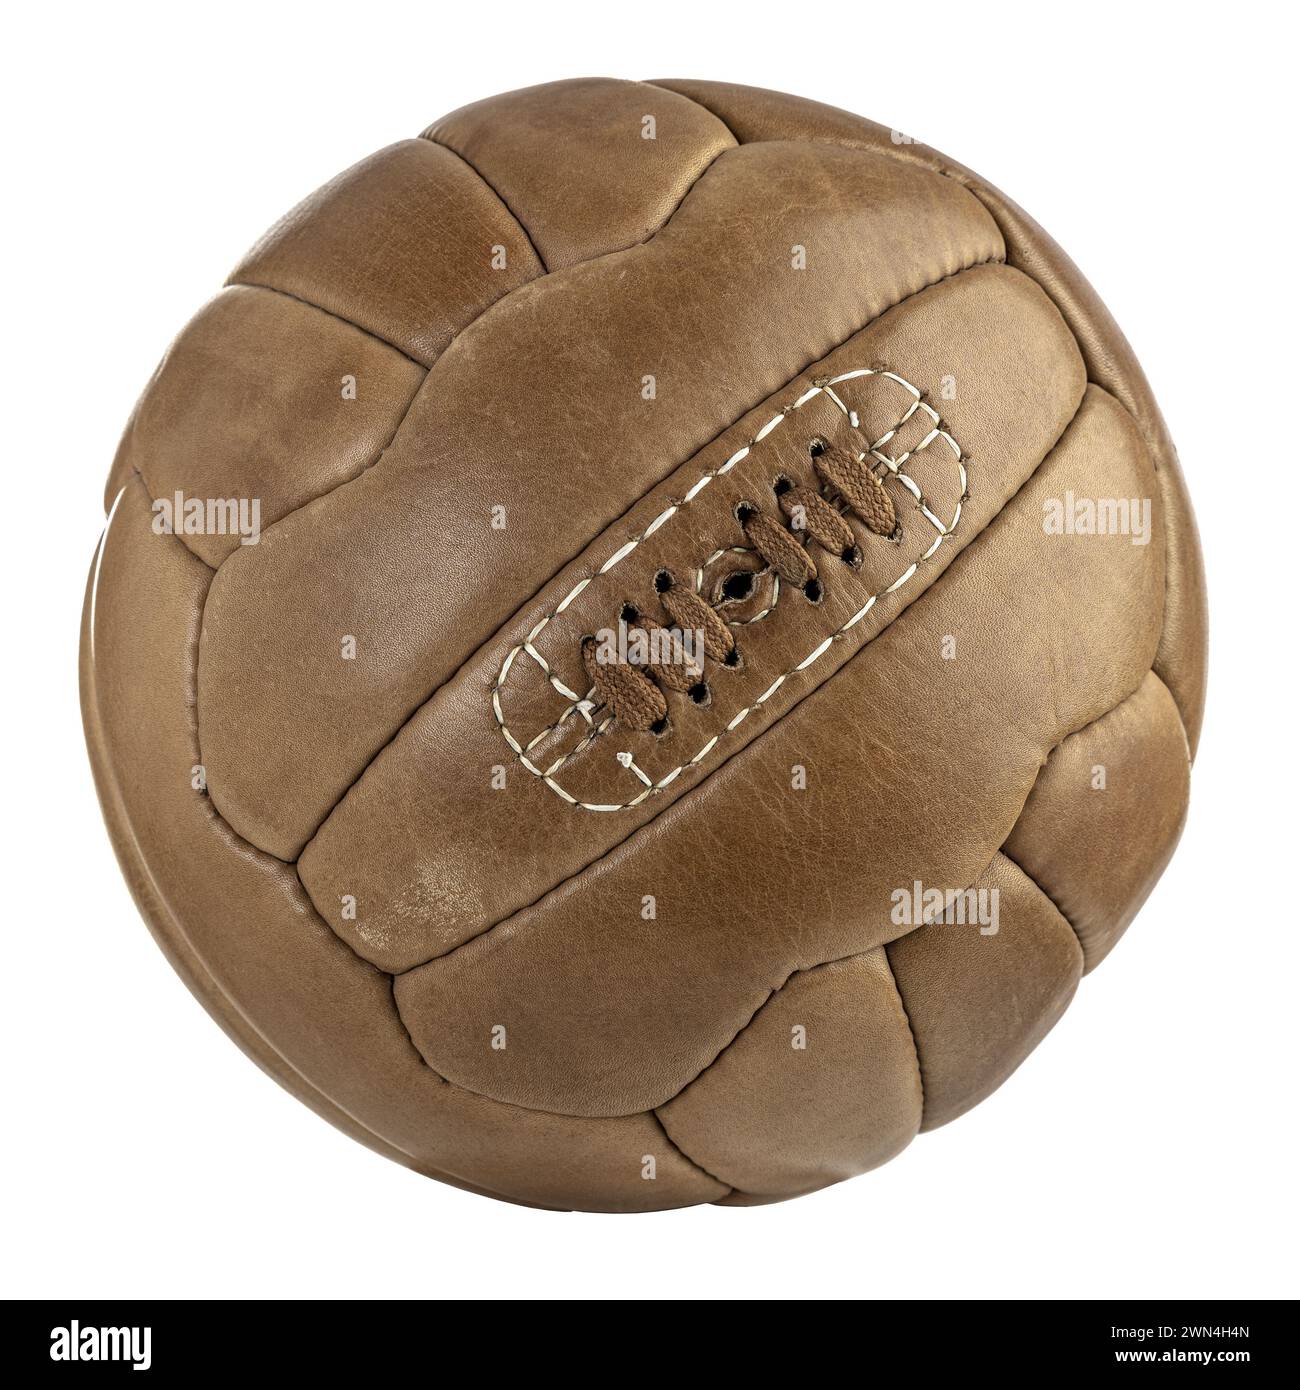 Classico calcio in pelle marrone con allacciatura tradizionale, isolato su sfondo bianco Foto Stock